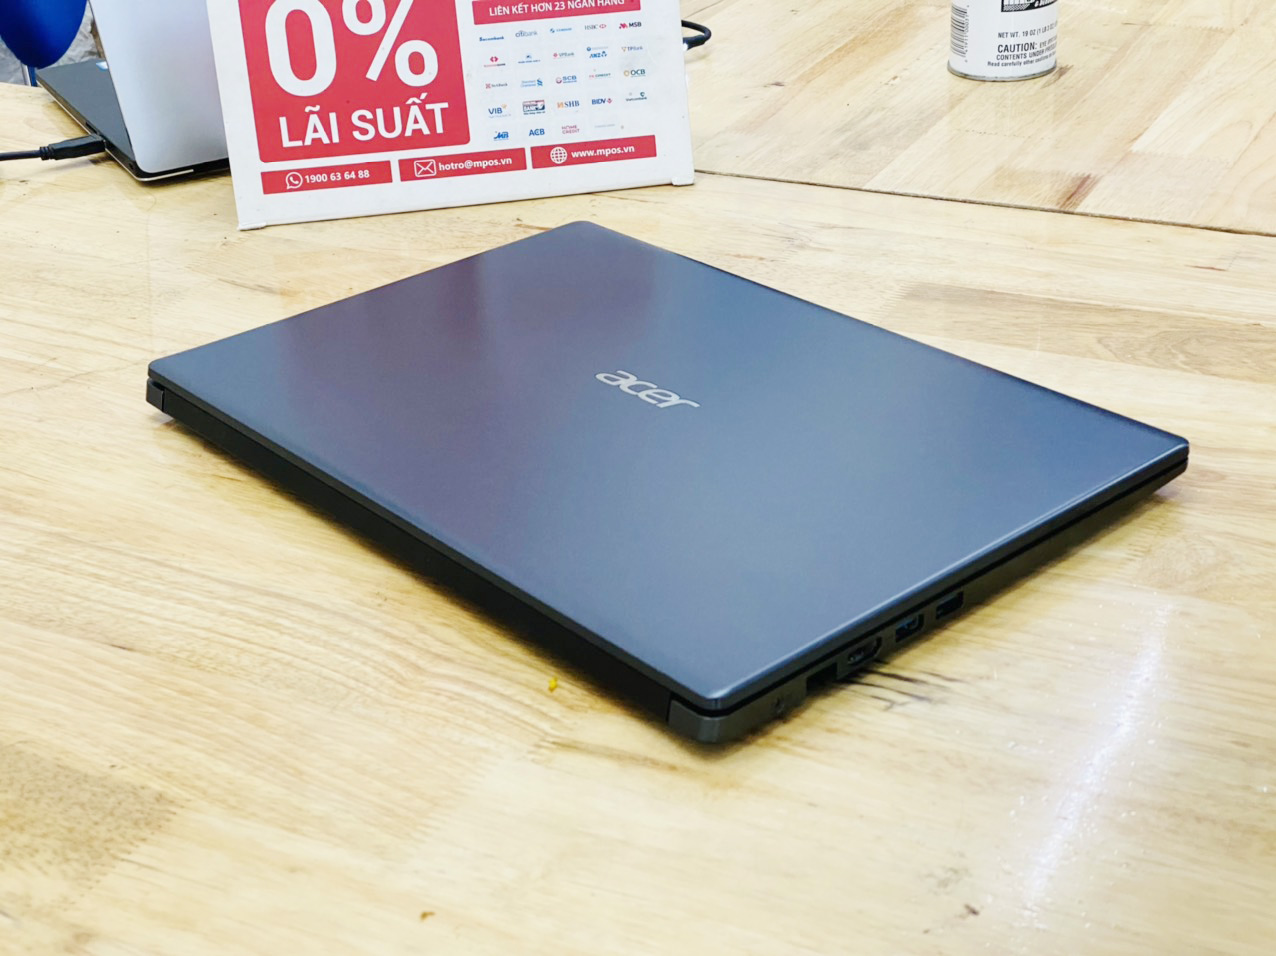 Laptop Acer Aspire A315-55G i7-8565U Ram 8G SSD 512G Vga Nvidia MX230 15.6 inch Full HD Viền Mỏng